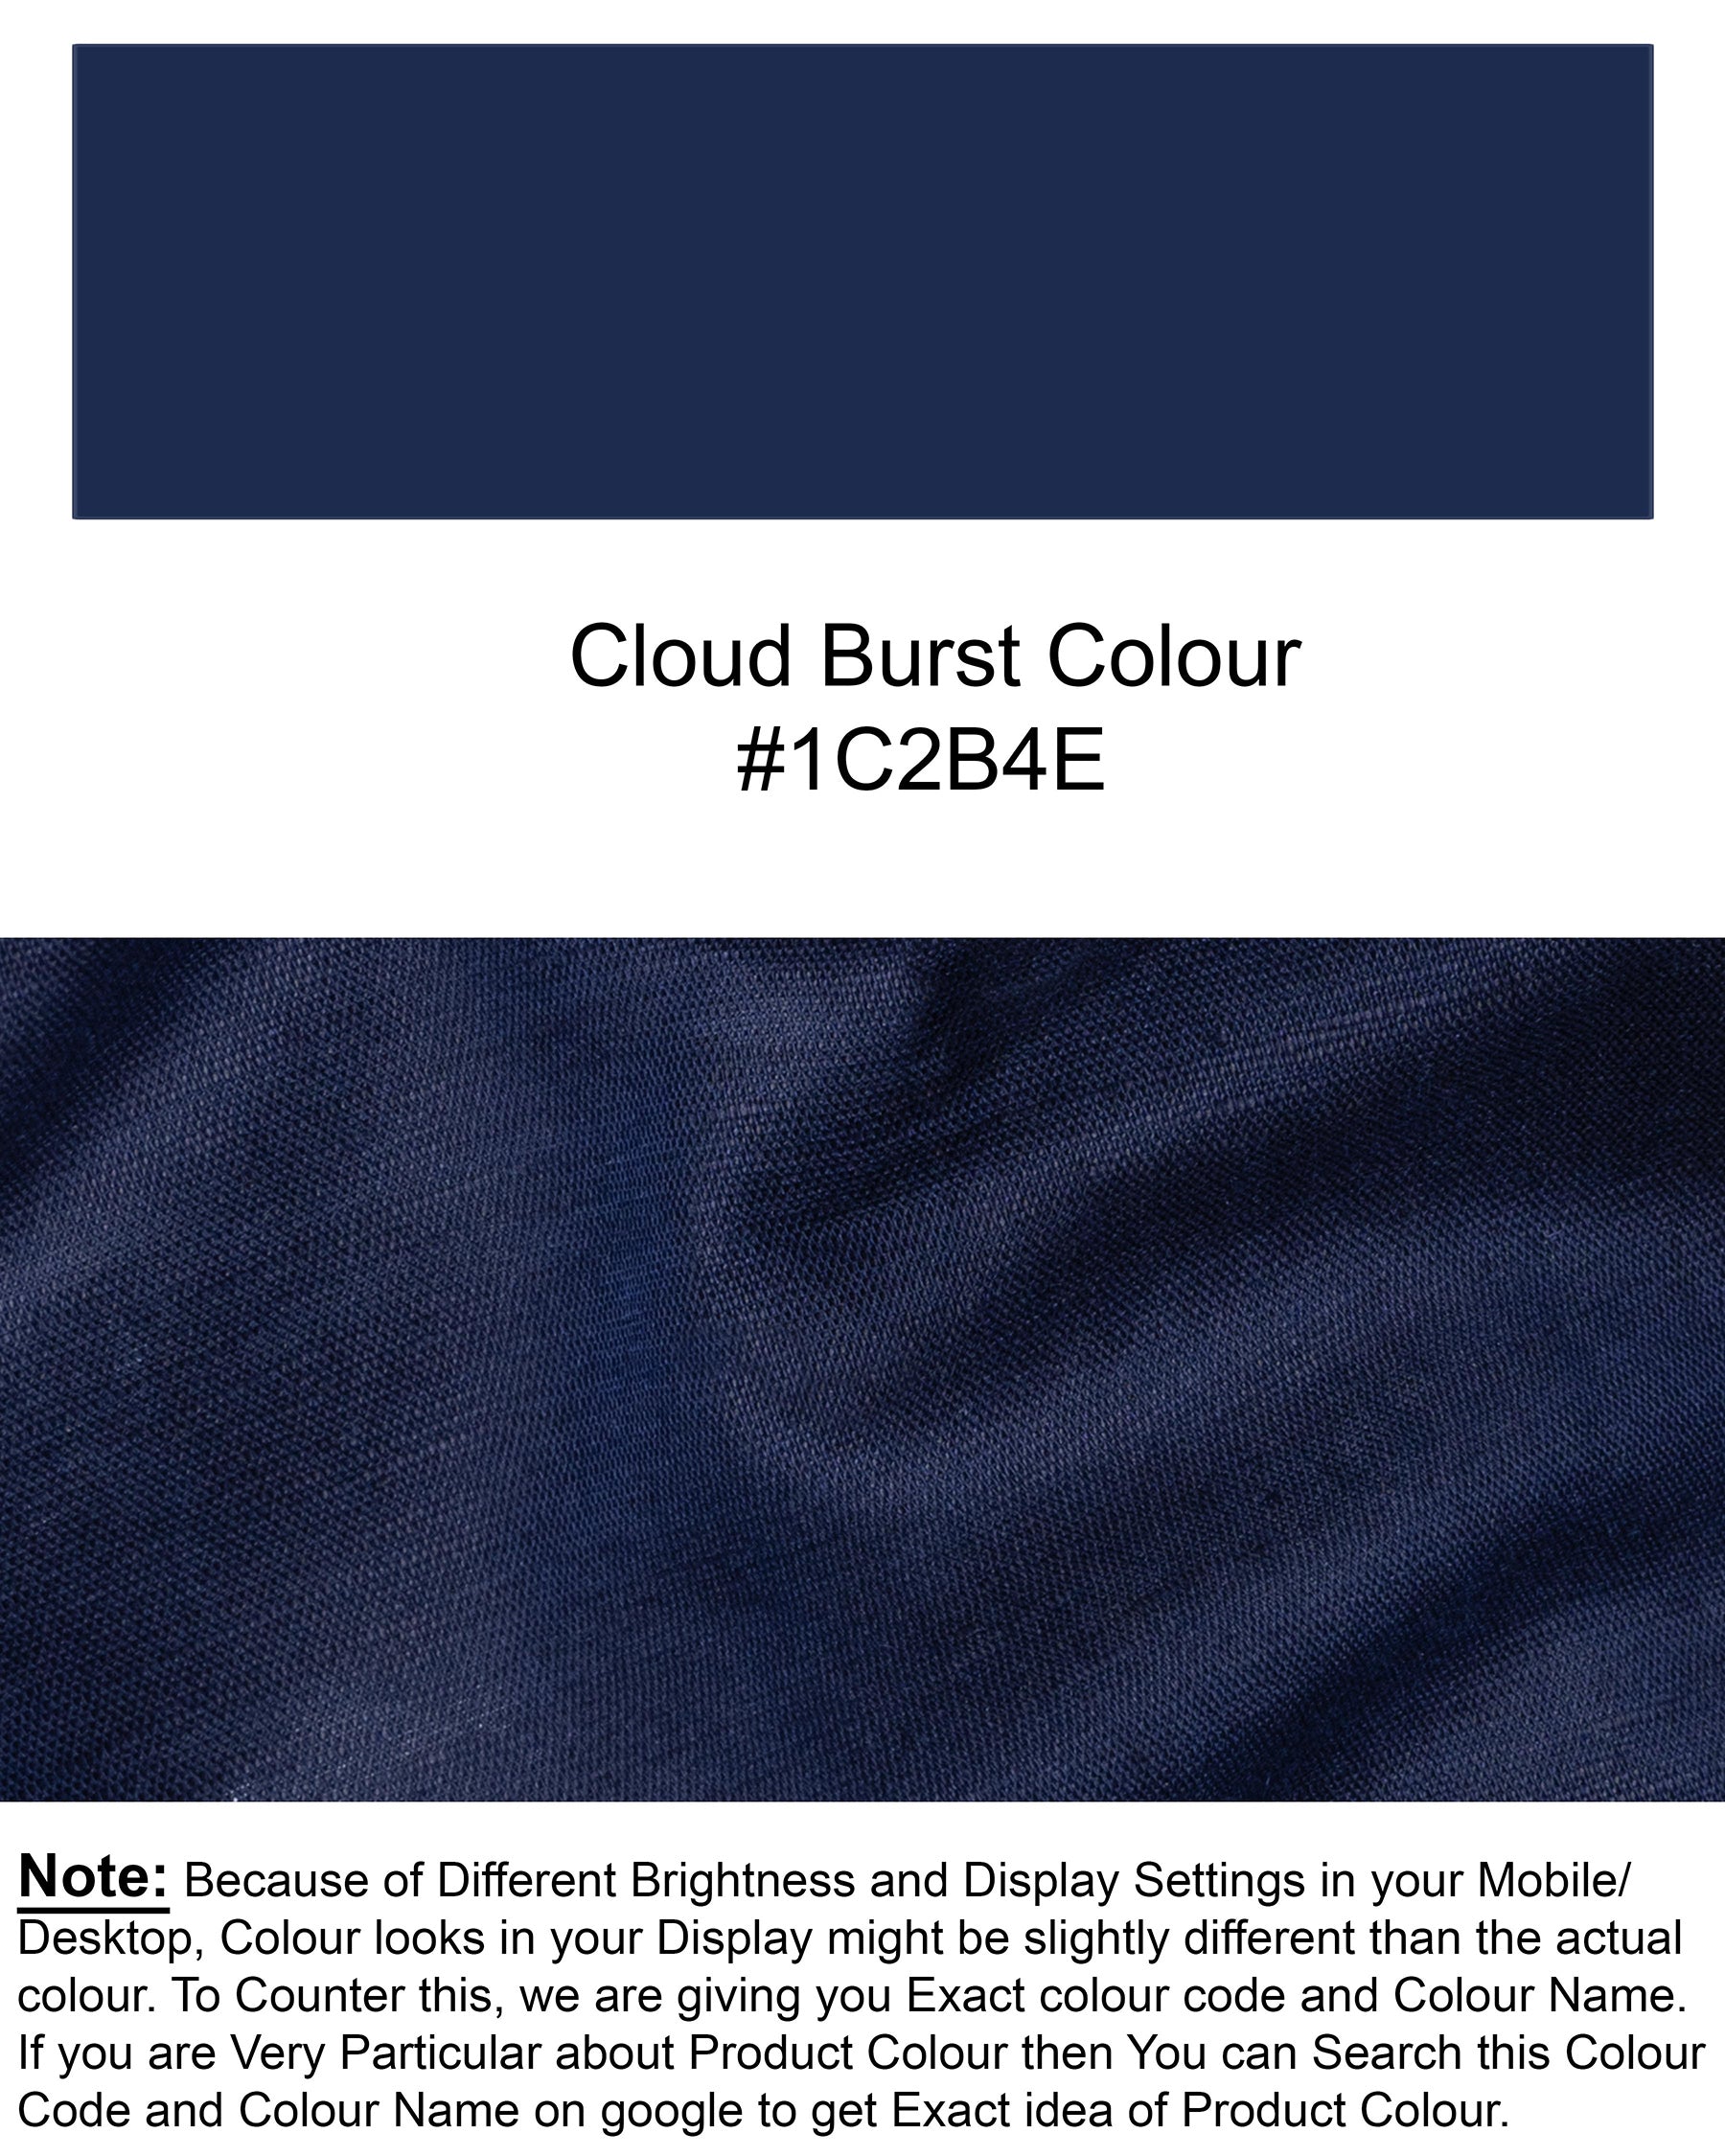 Cloud Burst Blue Luxurious Linen Shirt 5903-M-38, 5903-M-H-38, 5903-M-39, 5903-M-H-39, 5903-M-40, 5903-M-H-40, 5903-M-42, 5903-M-H-42, 5903-M-44, 5903-M-H-44, 5903-M-46, 5903-M-H-46, 5903-M-48, 5903-M-H-48, 5903-M-50, 5903-M-H-50, 5903-M-52, 5903-M-H-52